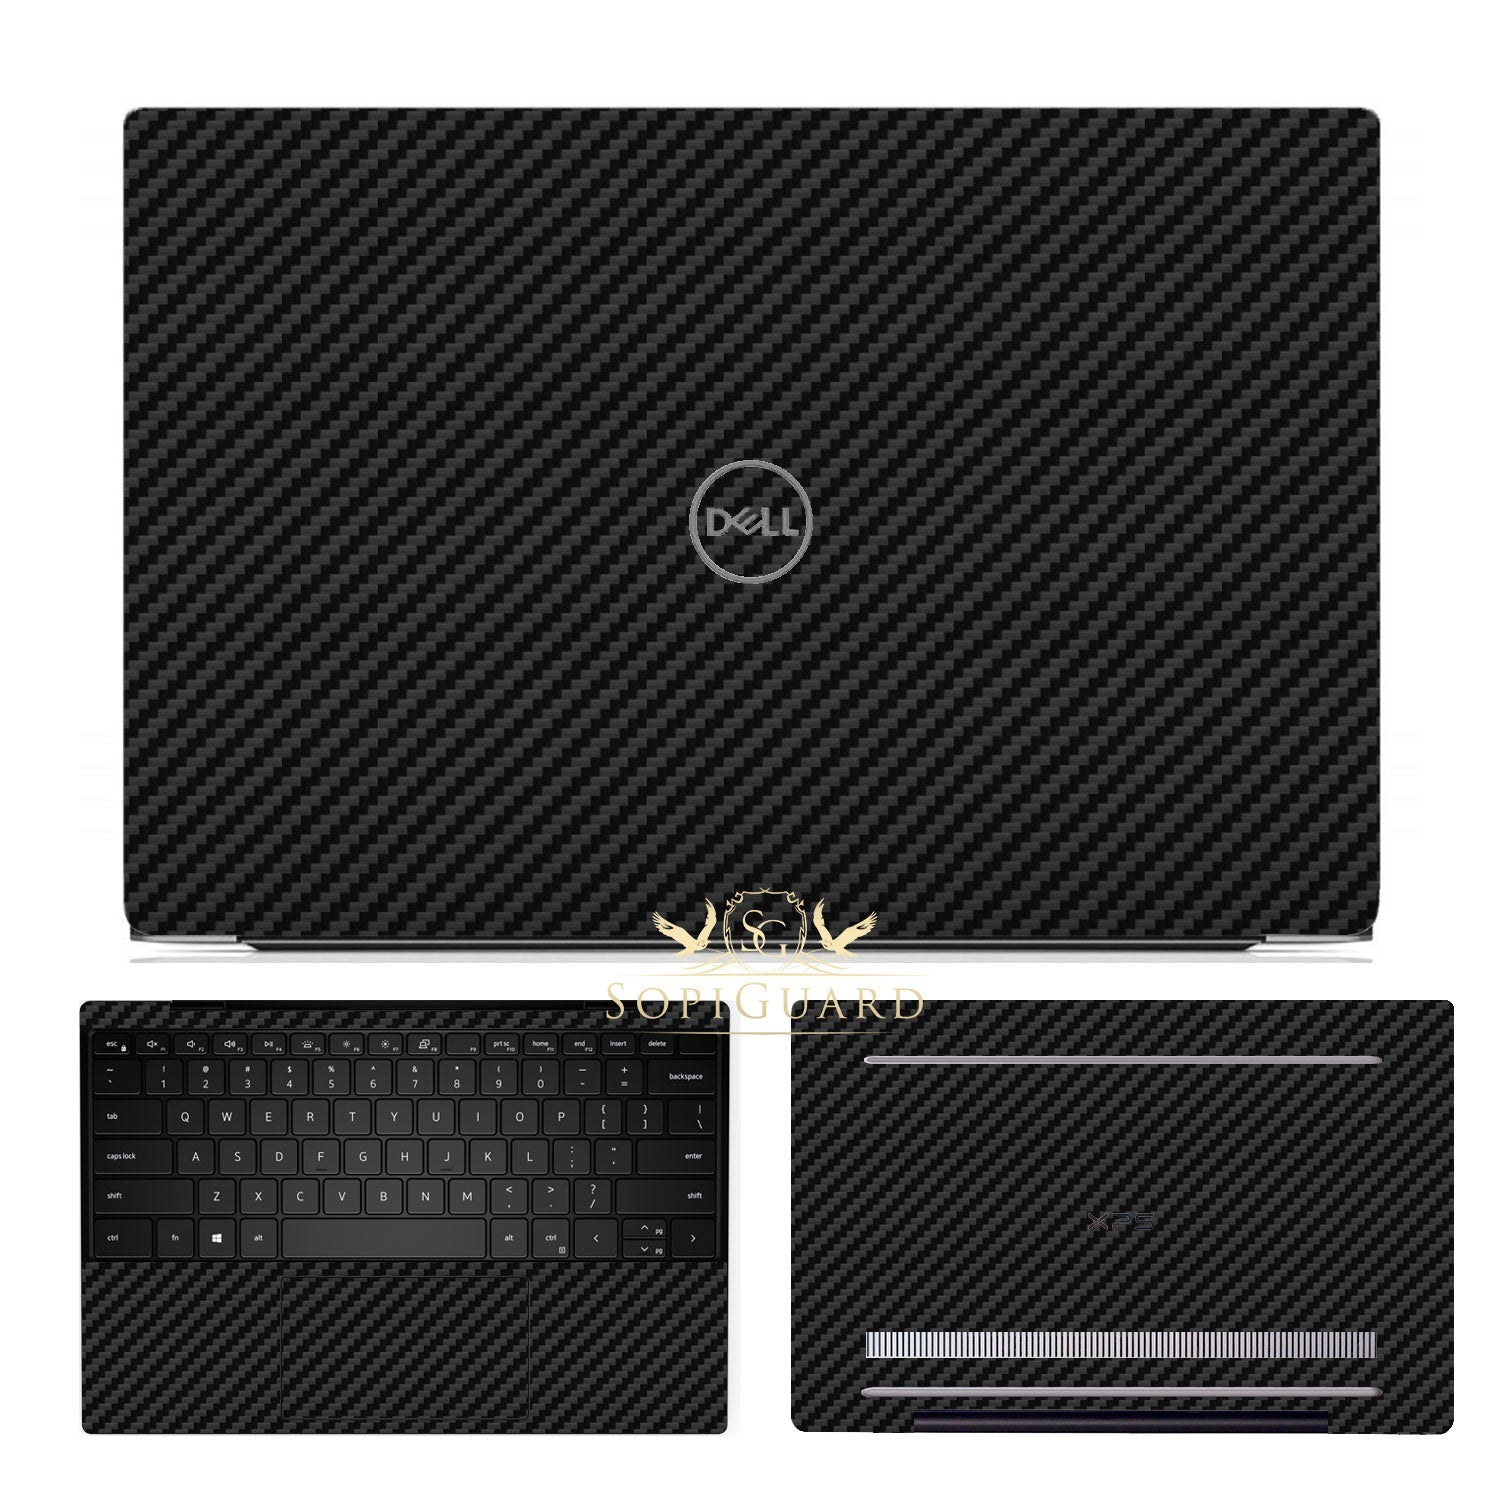 Dell XPS 15 (9500) sticker skin